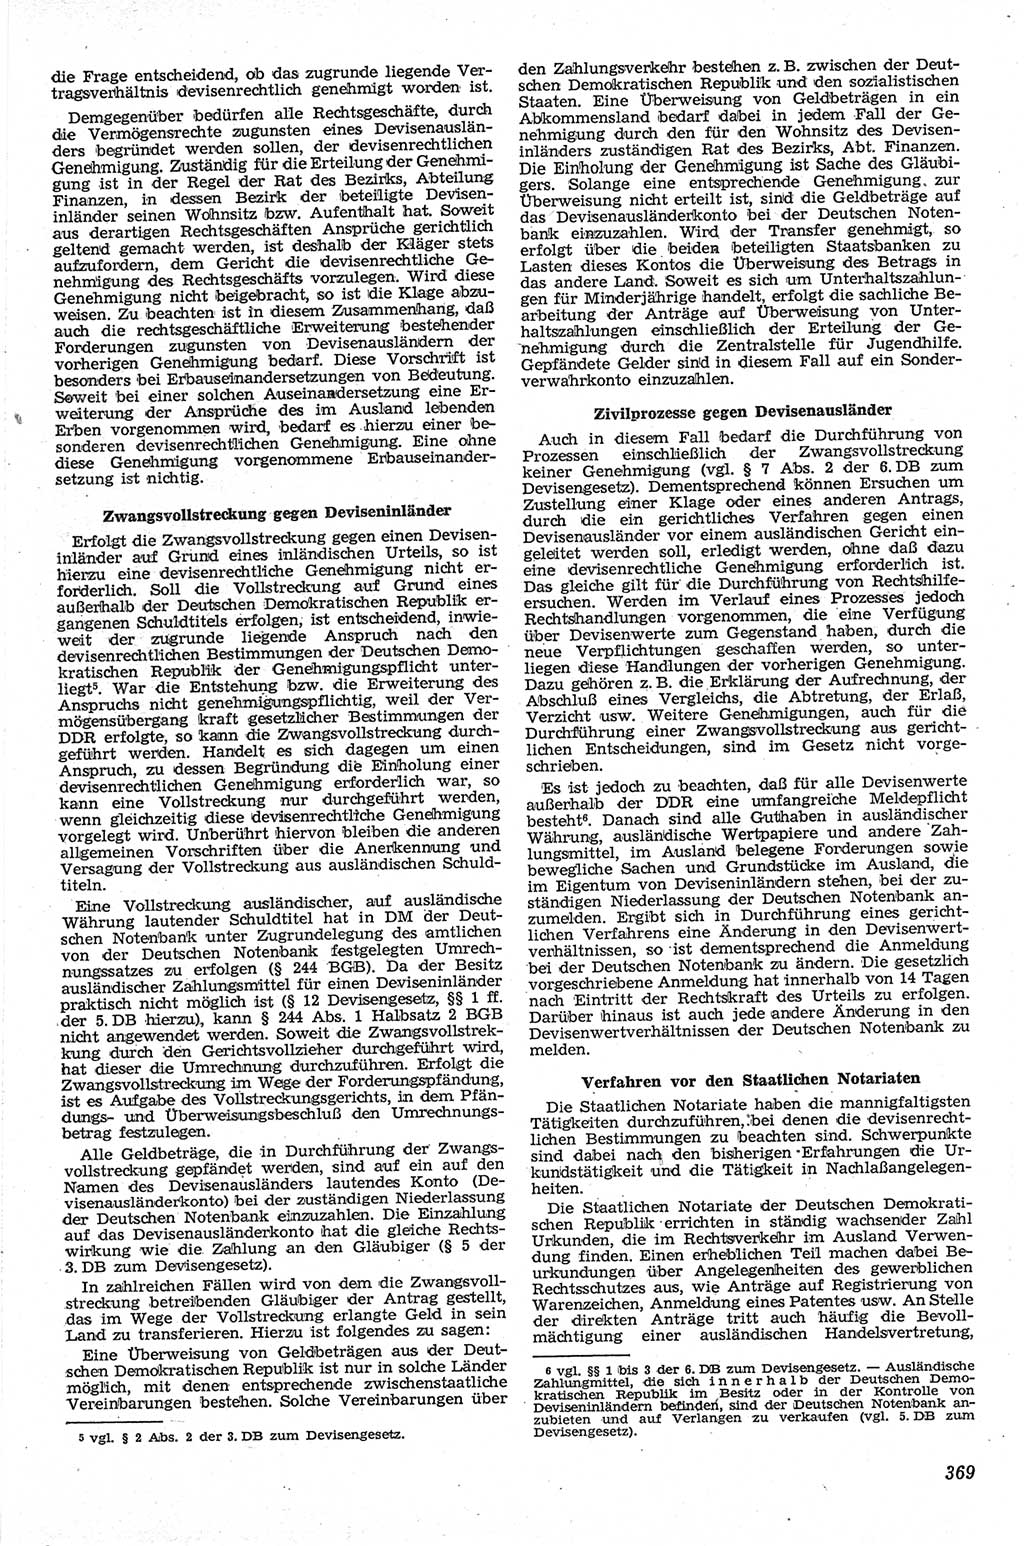 Neue Justiz (NJ), Zeitschrift für Recht und Rechtswissenschaft [Deutsche Demokratische Republik (DDR)], 13. Jahrgang 1959, Seite 369 (NJ DDR 1959, S. 369)